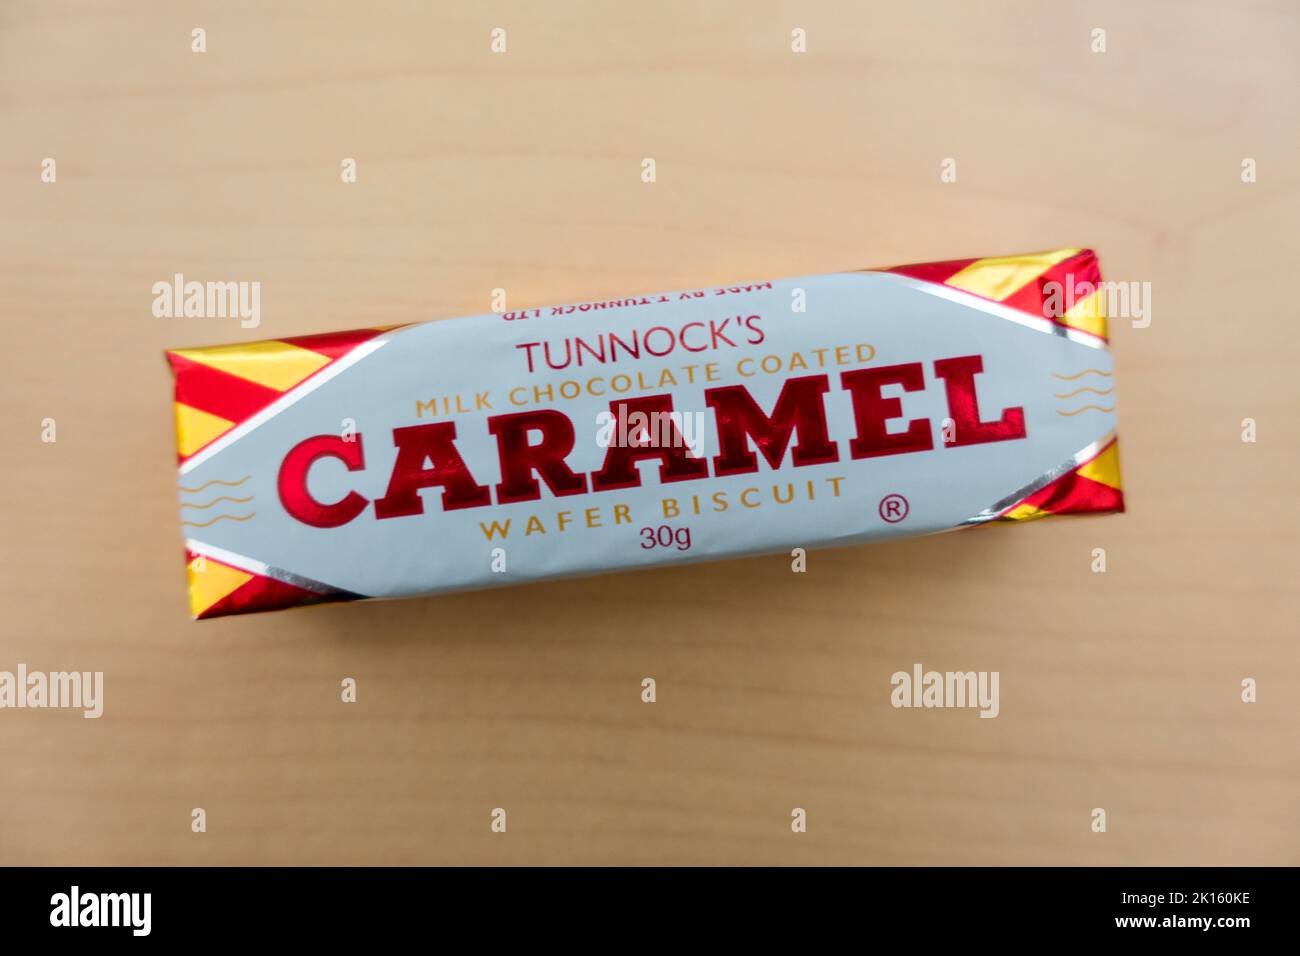 Galleta de wafer con chocolate y leche Tunnocks Foto de stock